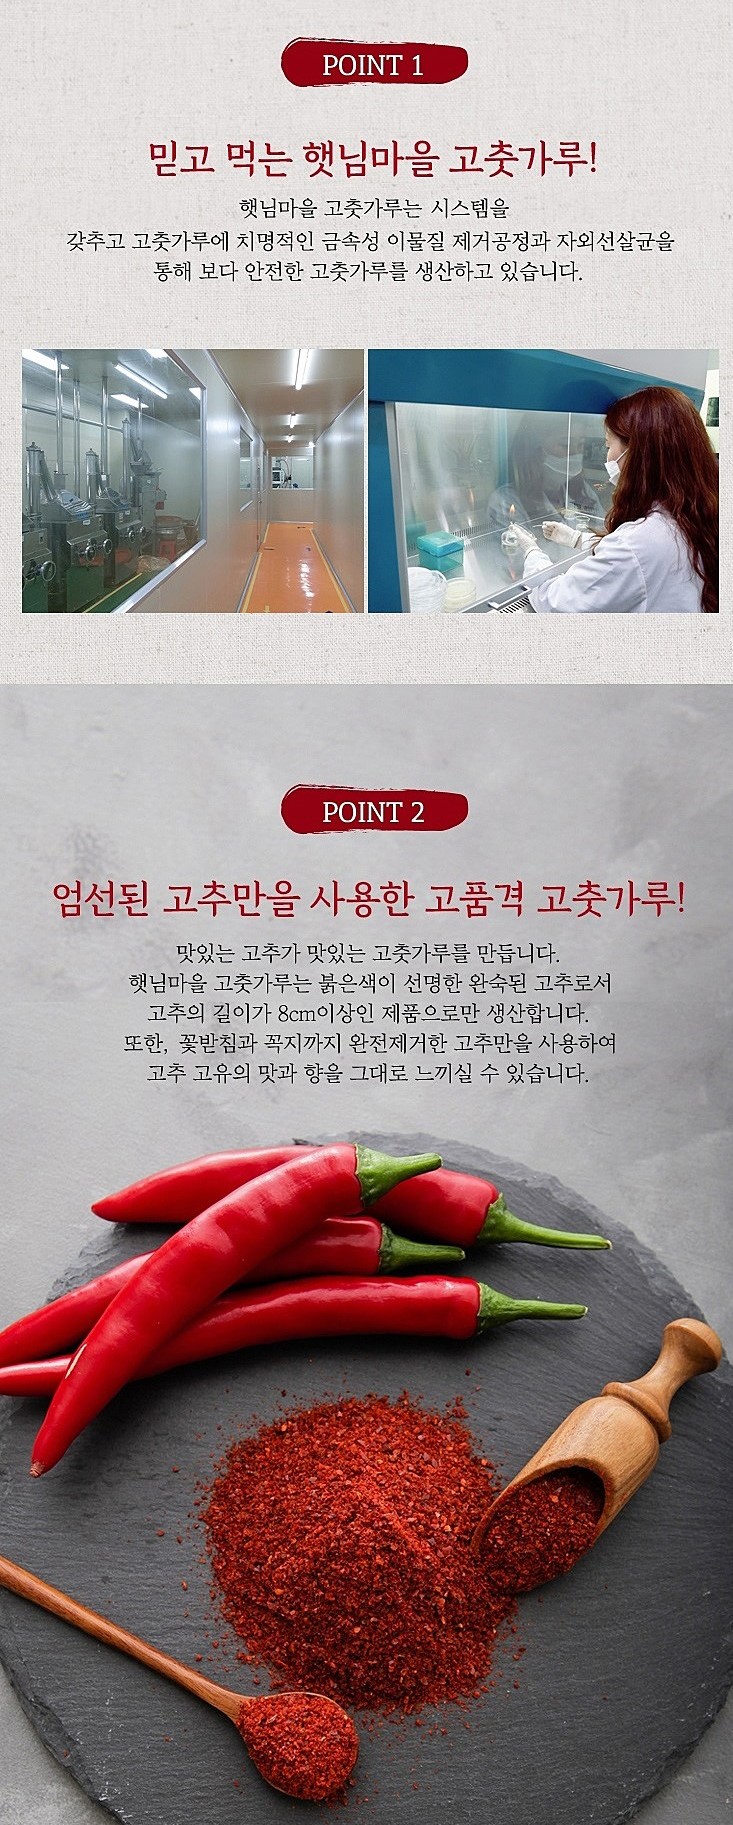 韓國食品-[Sunvillage] Seasoning Red Pepper Powder [Hot] 110g